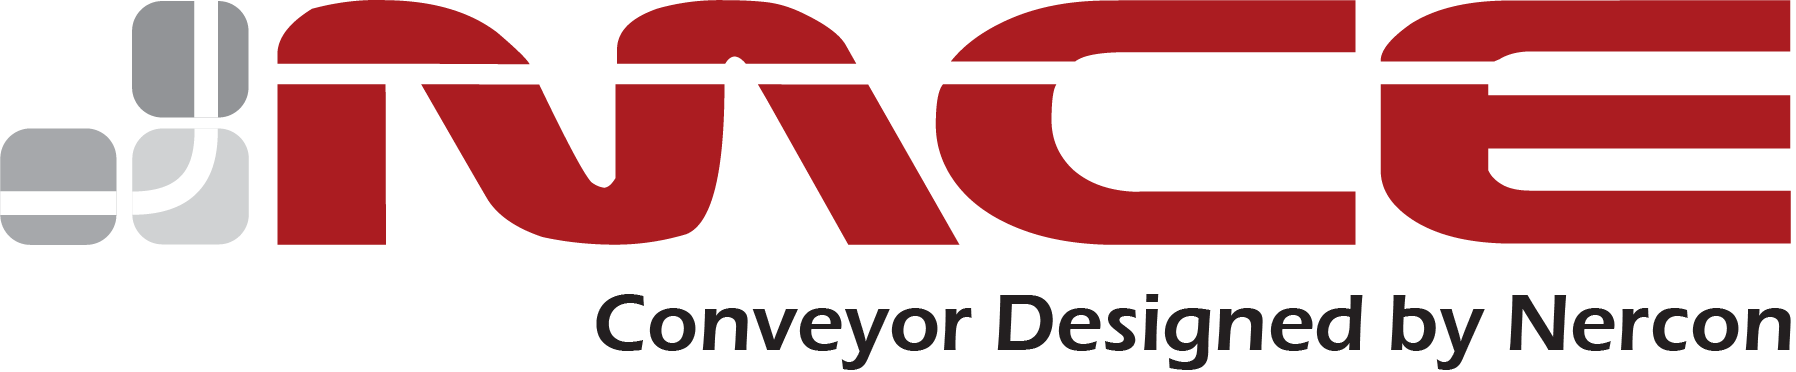 Modular Conveyor Express  Logo